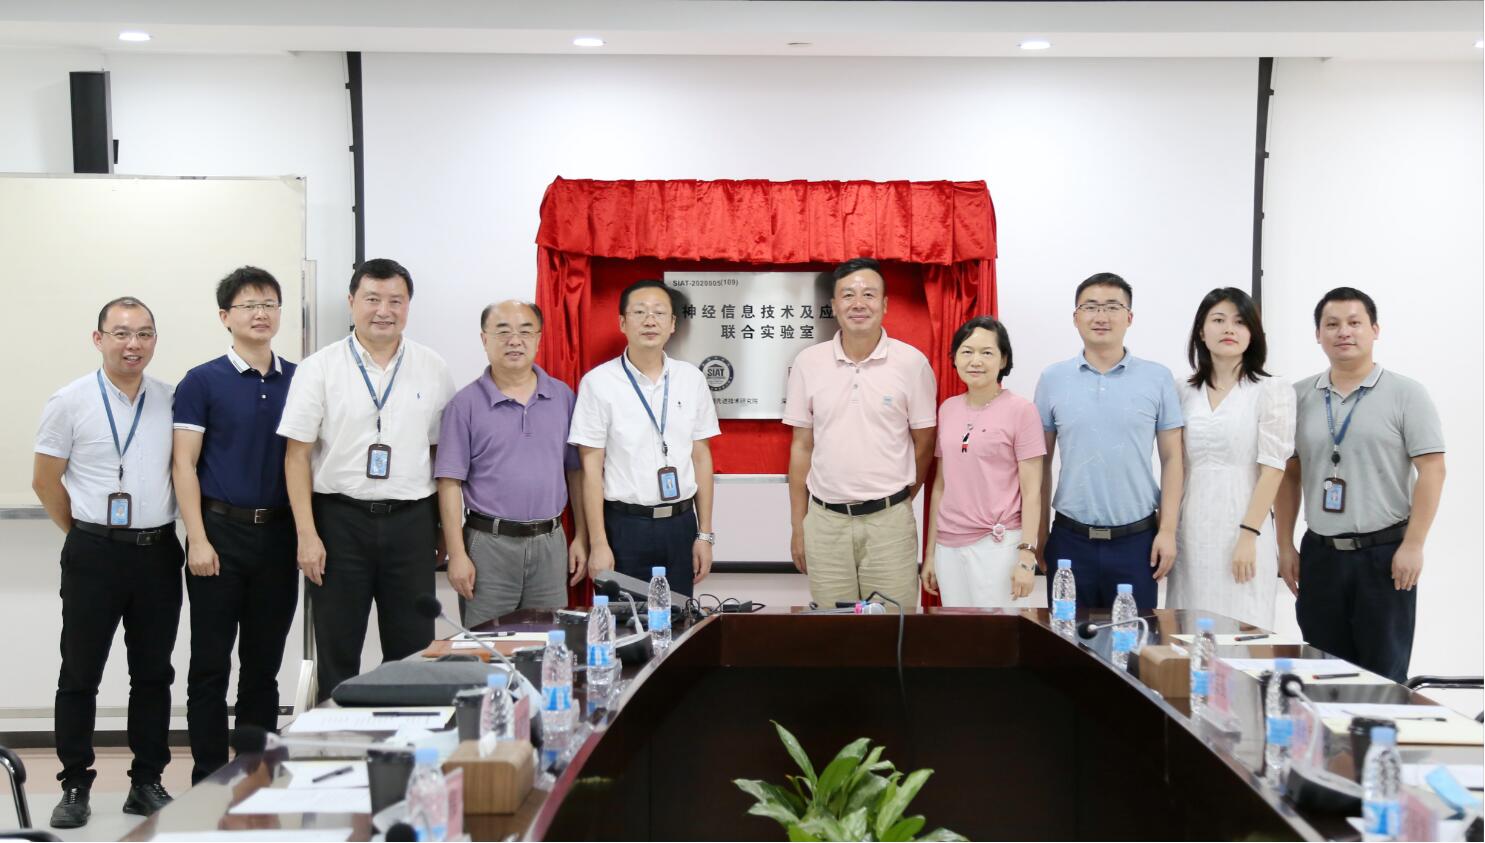 神经信息技术及应用联合实验室在深圳先进院揭牌